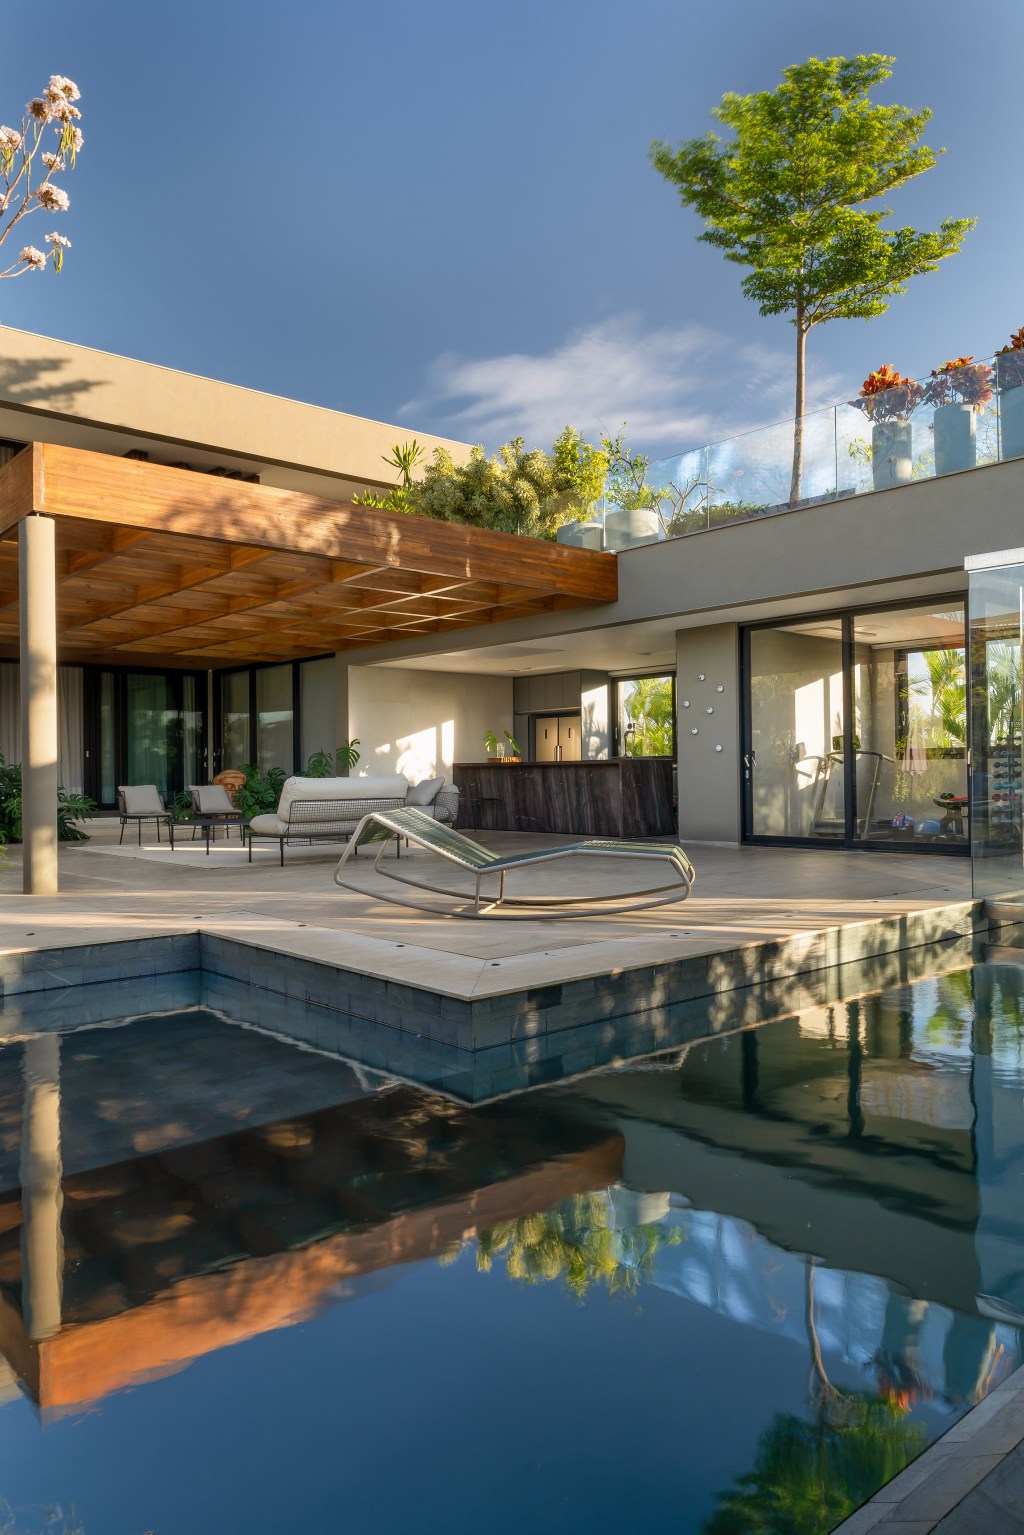 Casa de 717 m² erguida do zero em terreno em declive é repleta de natureza. Projeto de Rogério da Fonseca, do escritório RF Arquitetura. Na foto, varanda co piscina e jardim.